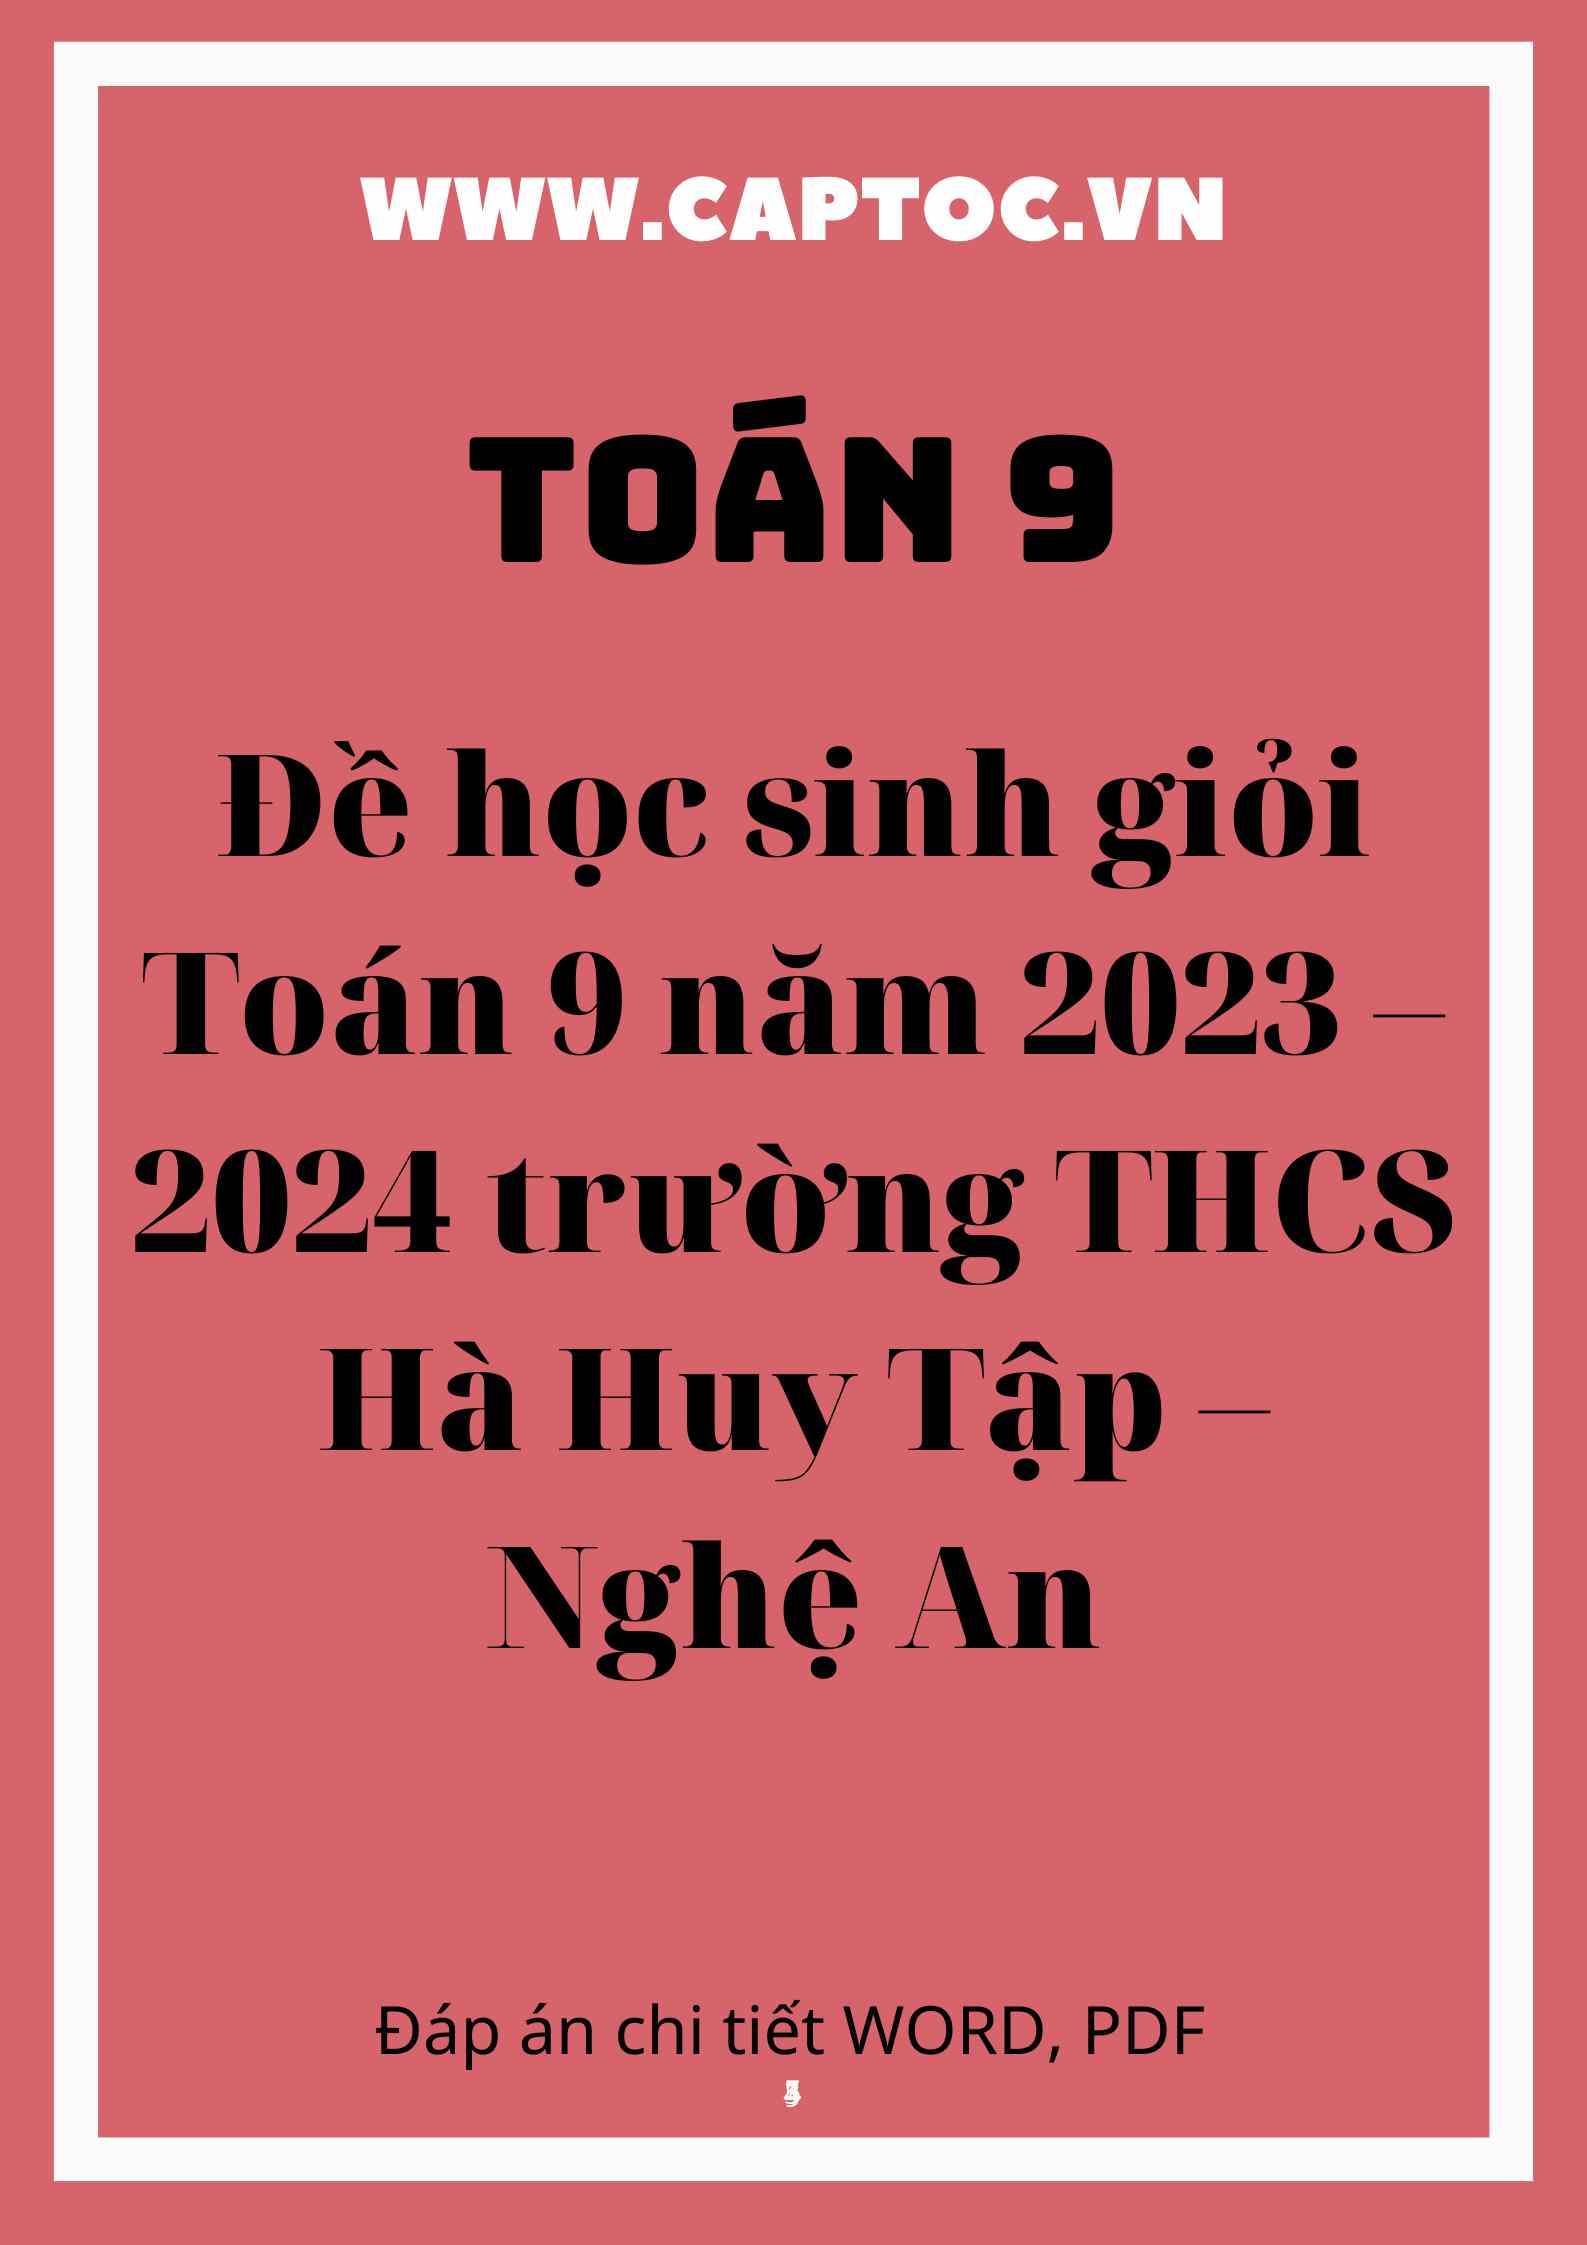 Đề học sinh giỏi Toán 9 năm 2023 – 2024 trường THCS Hà Huy Tập – Nghệ An